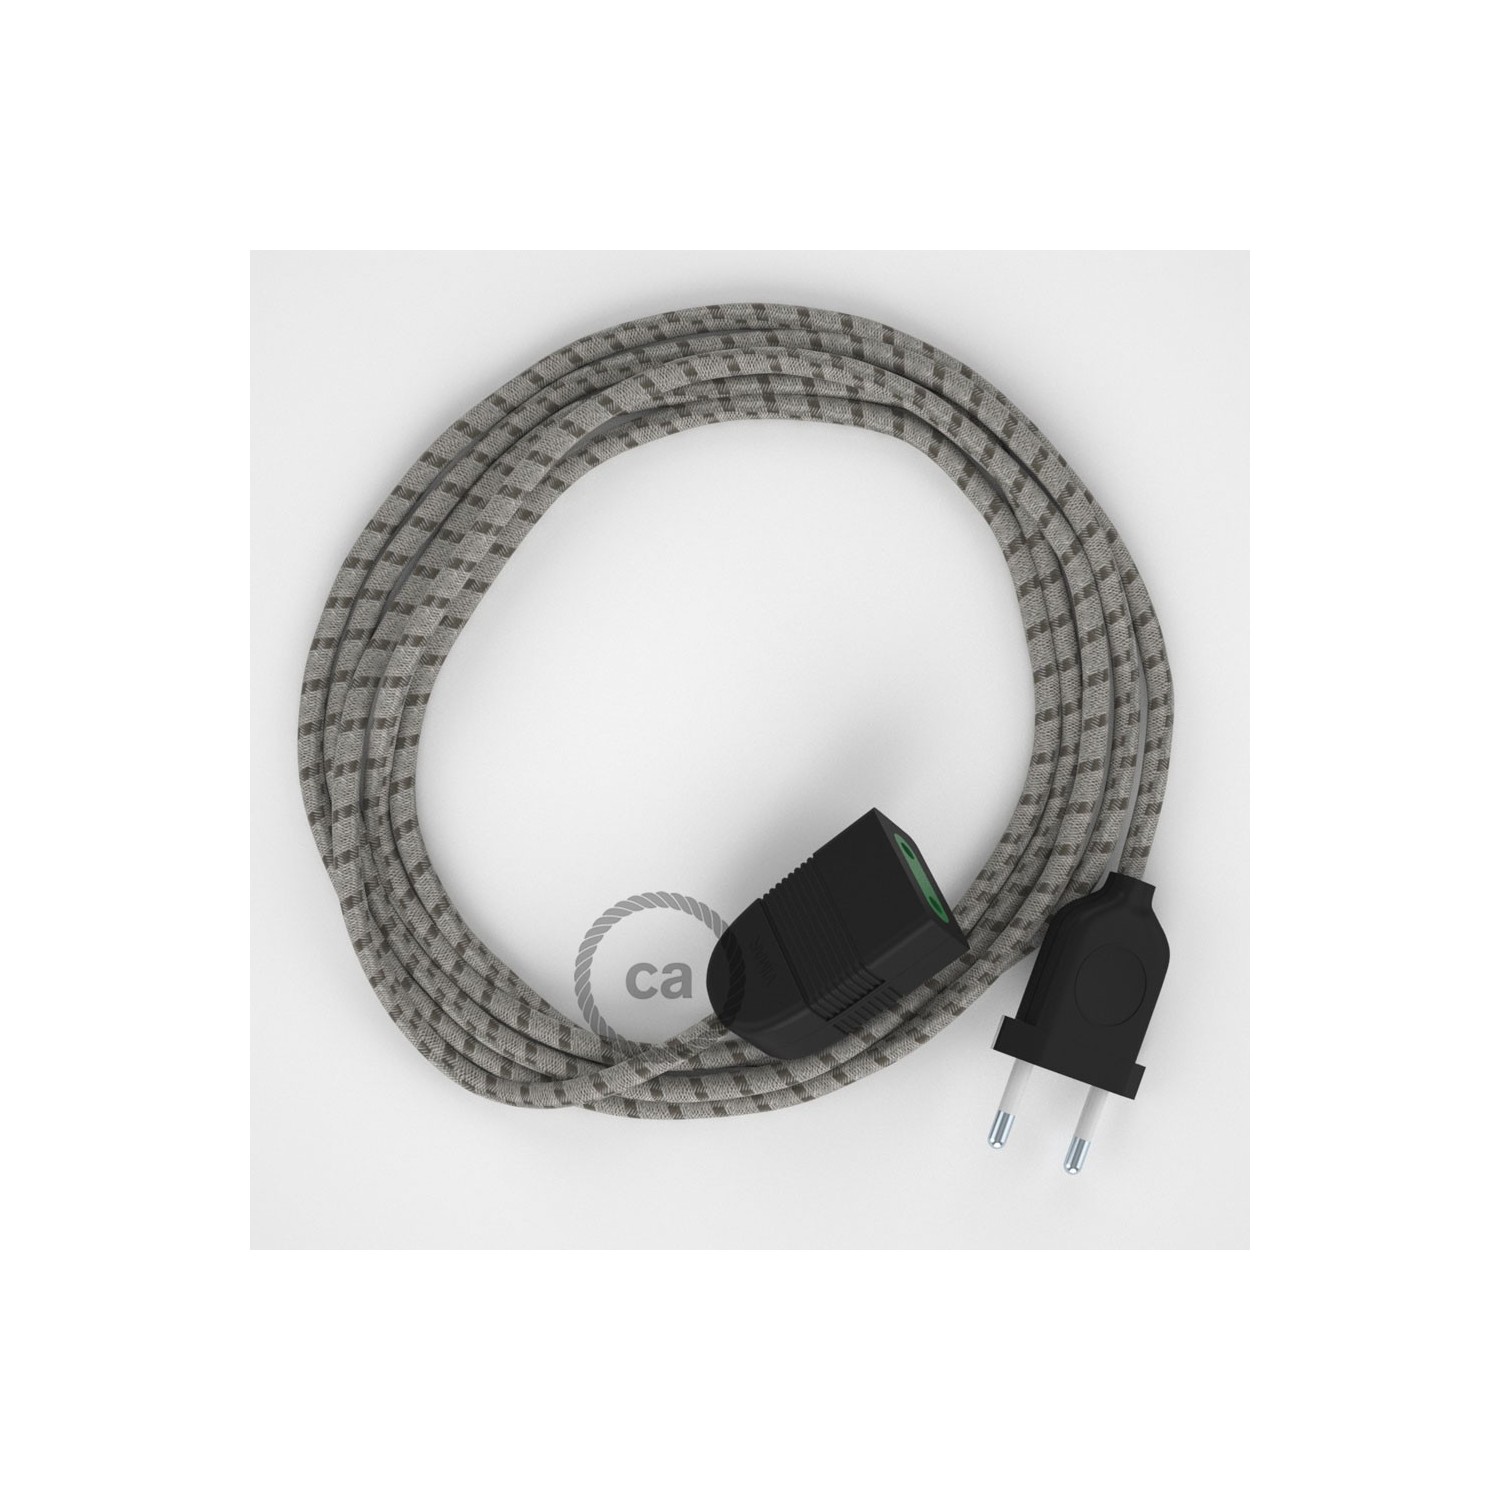 Rallonge électrique avec câble textile RD53 Coton et Lin Naturel Stripes Marron Écorce 2P 10A Made in Italy.